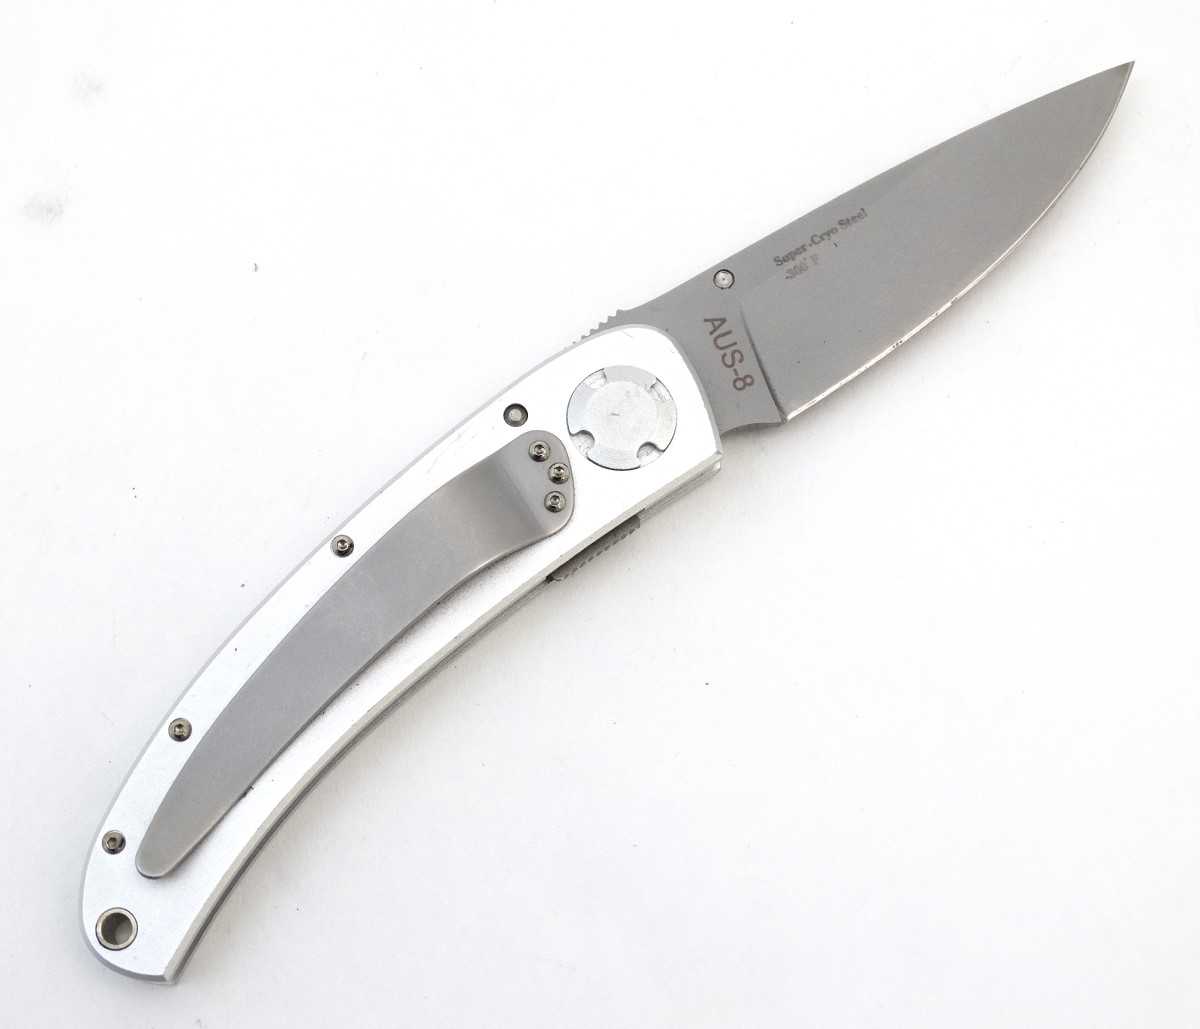 A Gigand 'Spectrum LT' pocket knife (designed by Fred Carter),